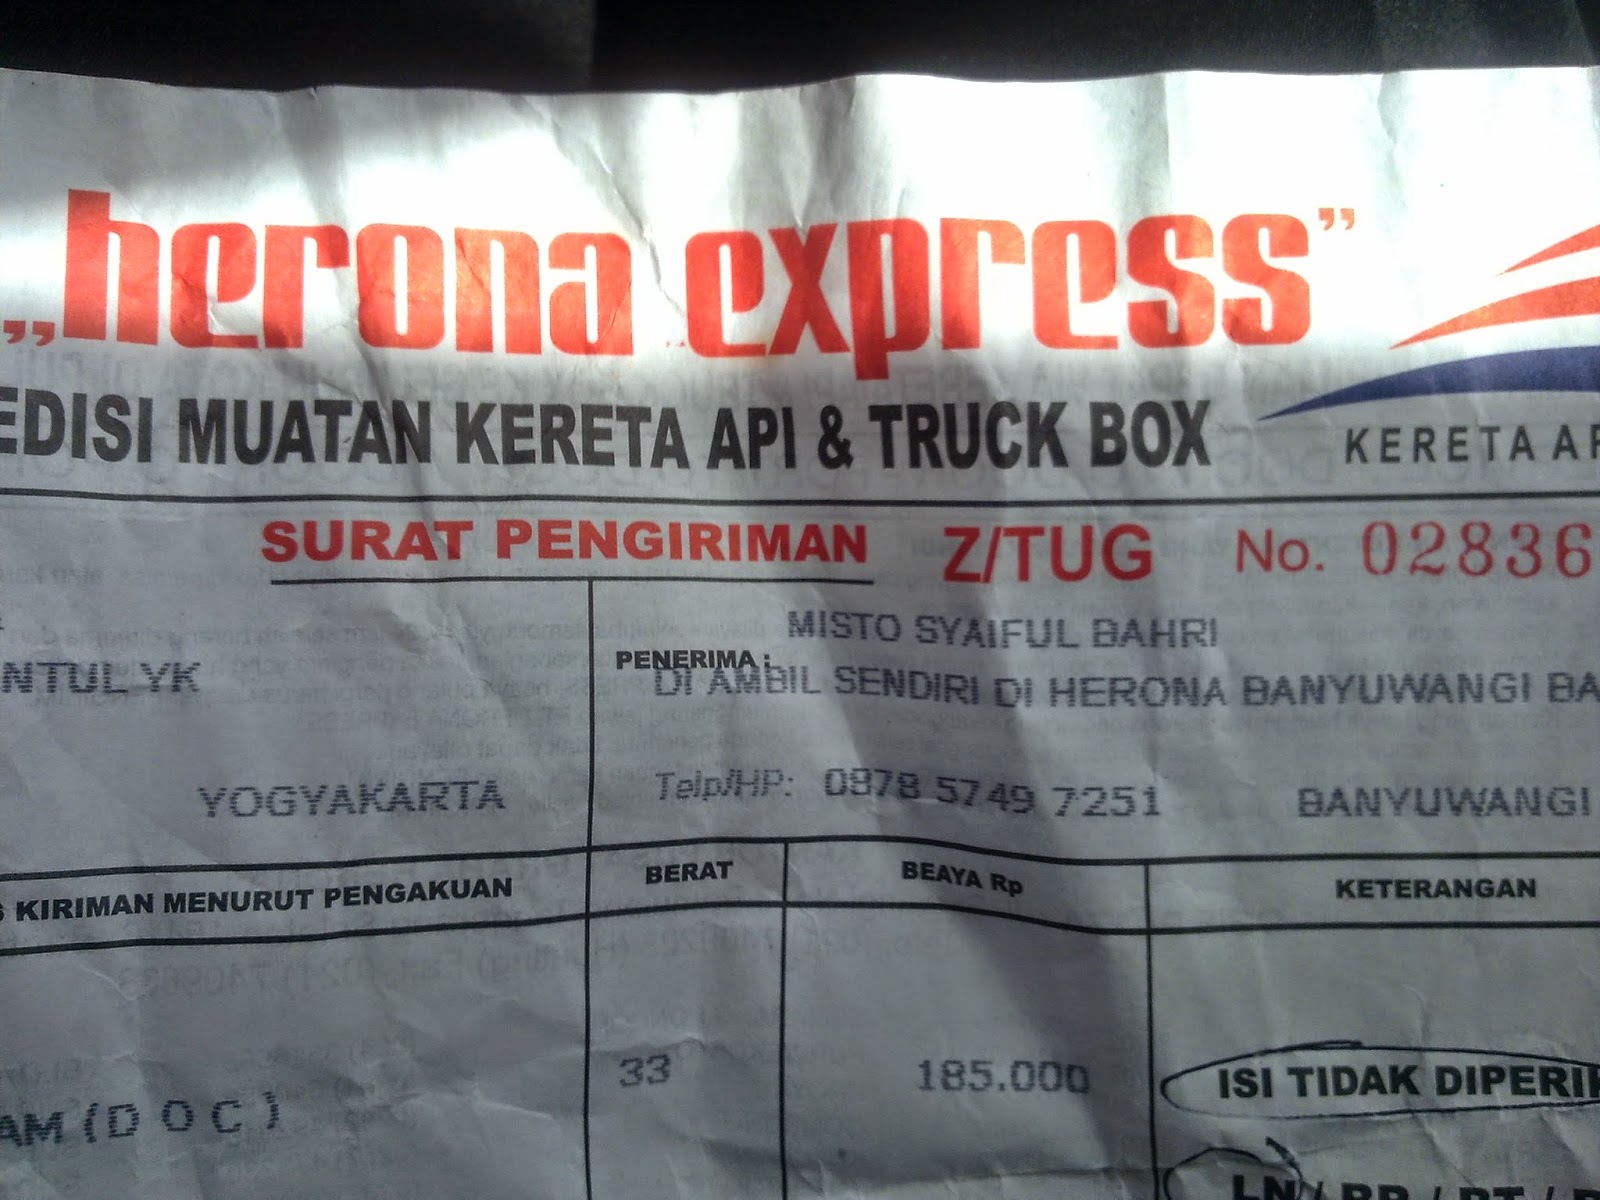 Kwitansi bukti pengiriman PT. Herona Express